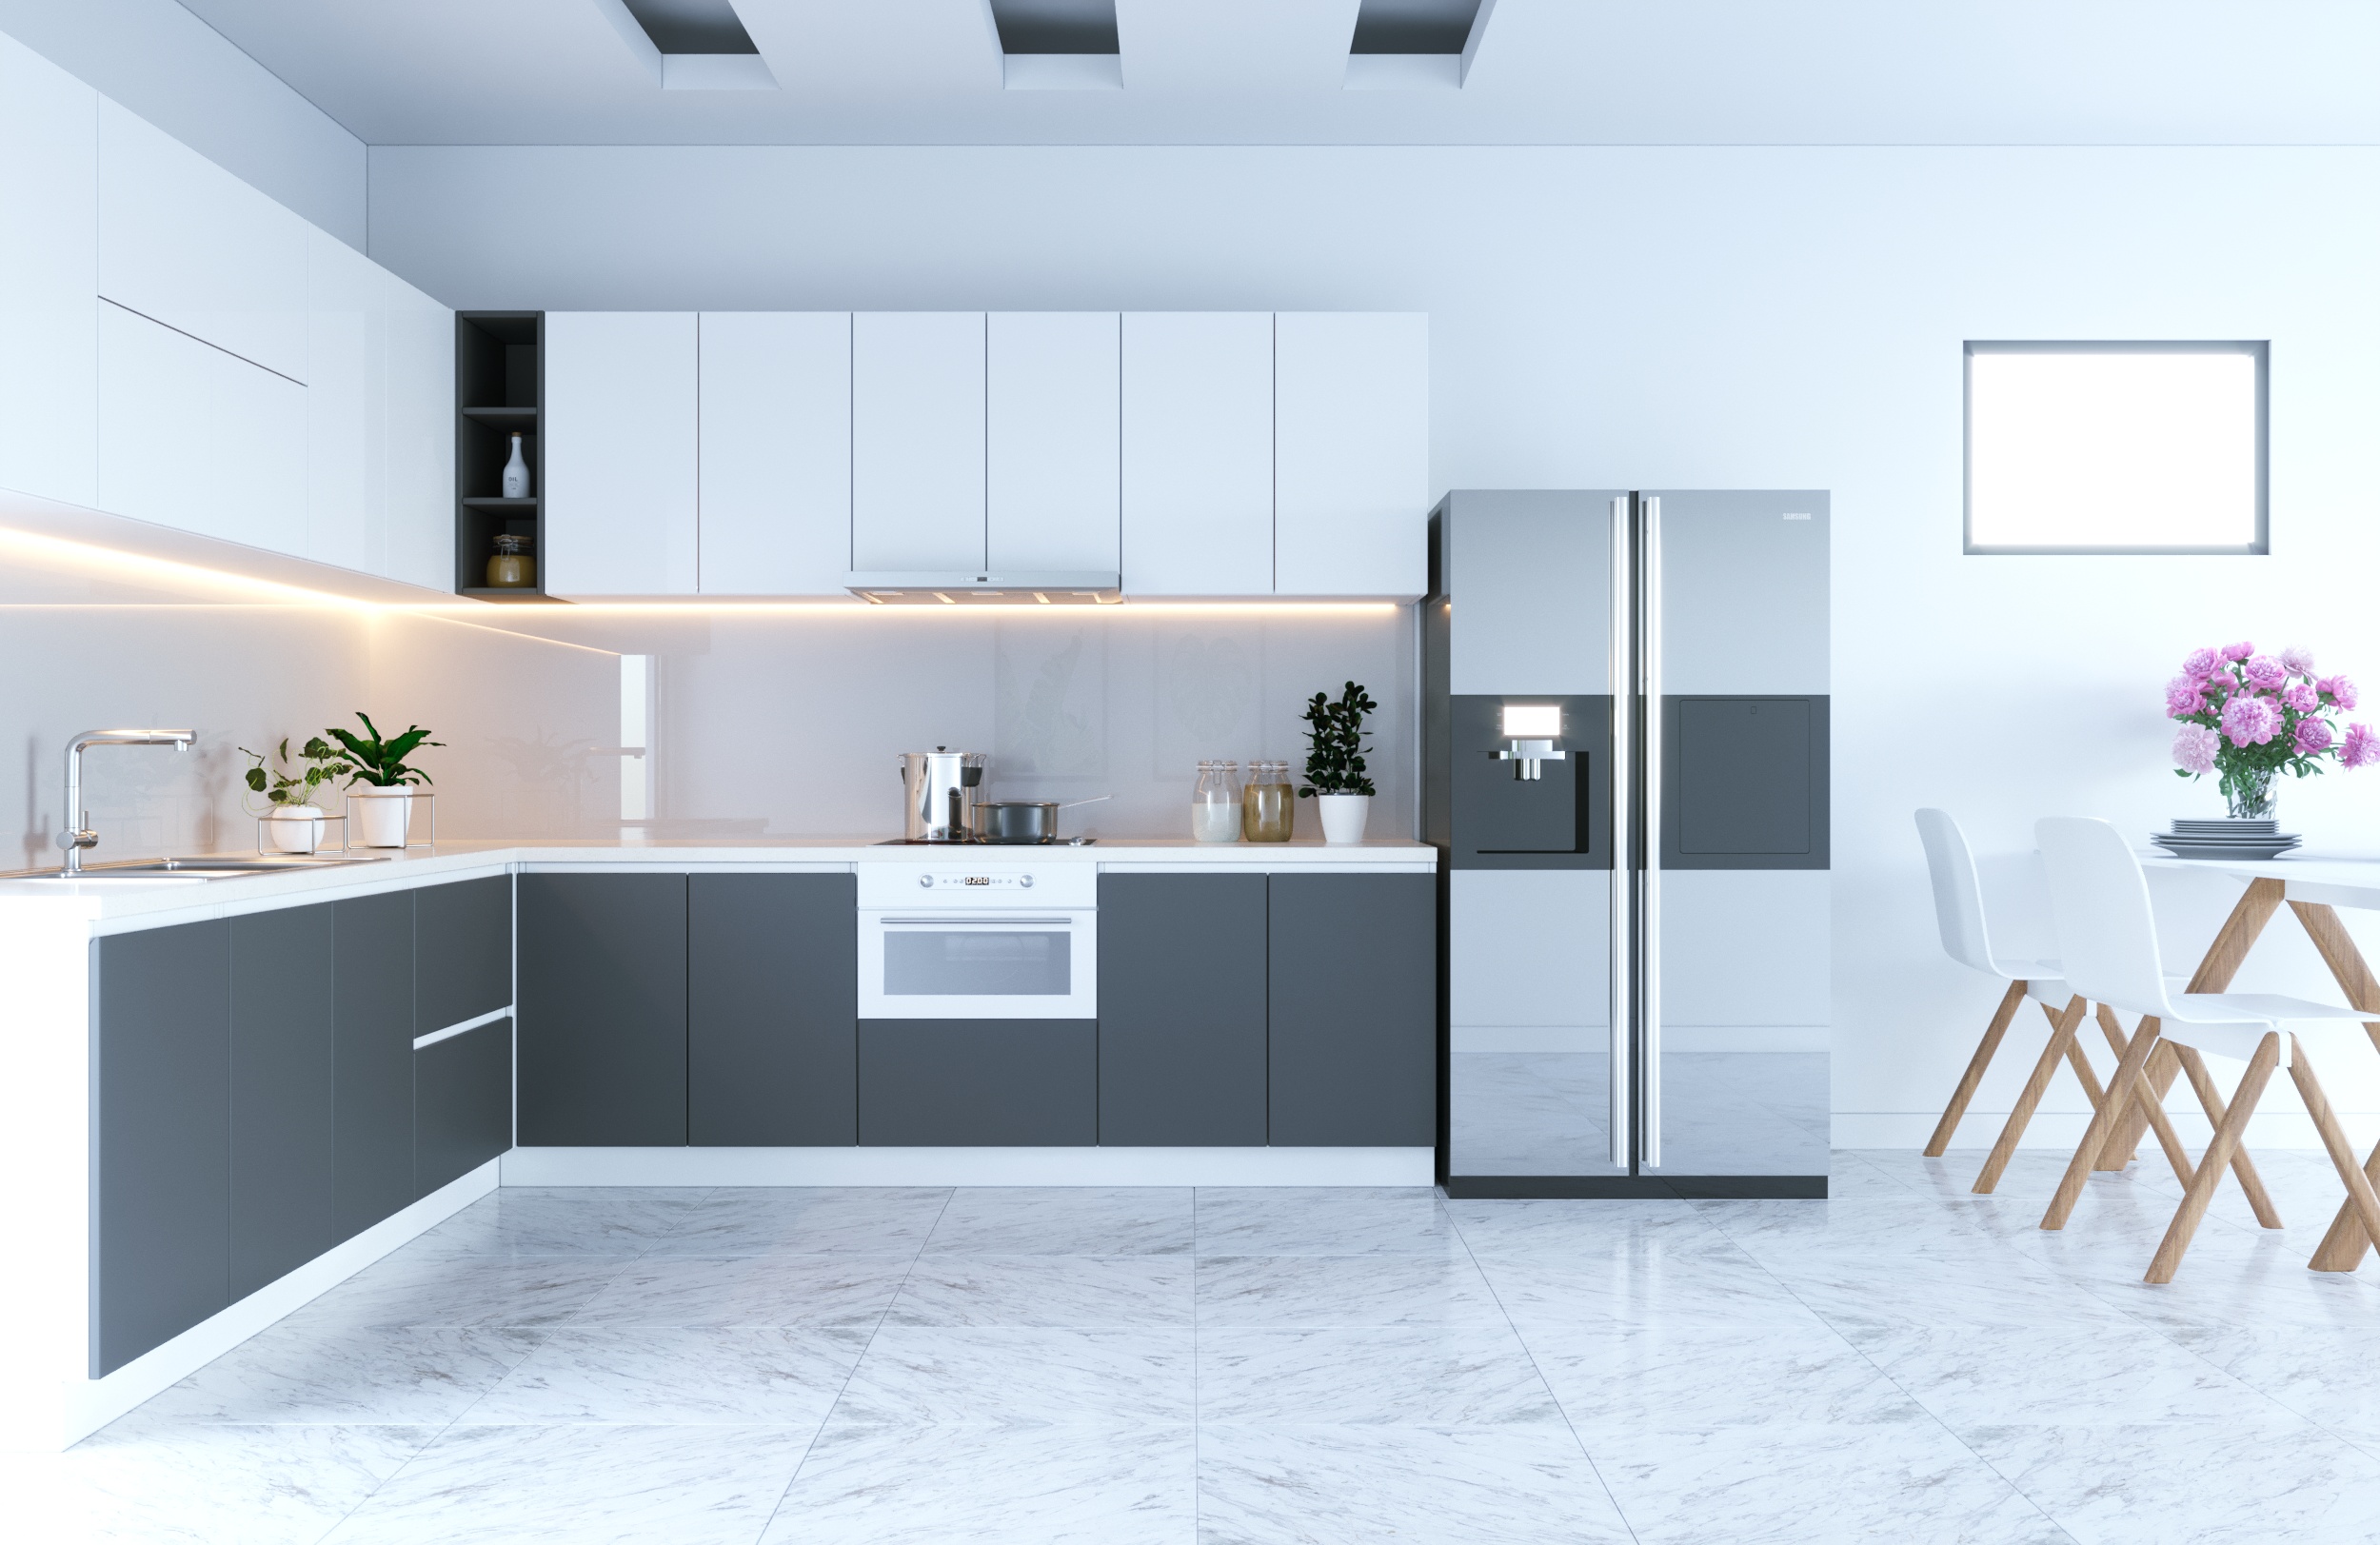 Không gian bếp hiện đại luôn thu hút mọi nhà bếp. Hãy tìm kiếm hình ảnh trang trí nội thất bếp hiện đại để cho ra một không gian bếp sang trọng, tiện nghi và đẳng cấp.